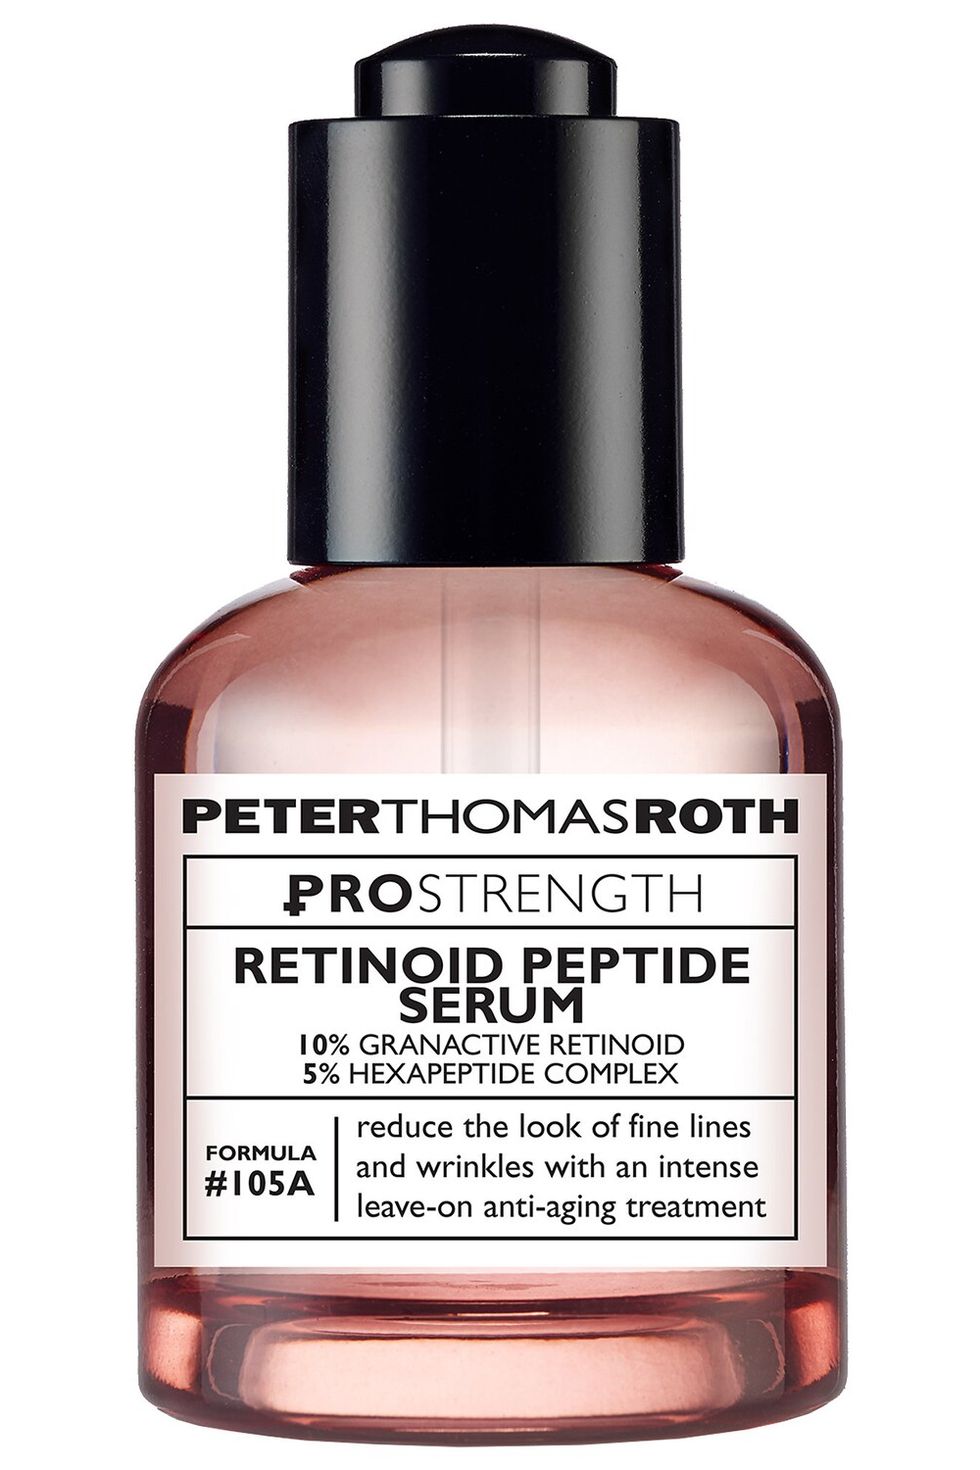 PRO Strength Retinoid Peptide Serum 